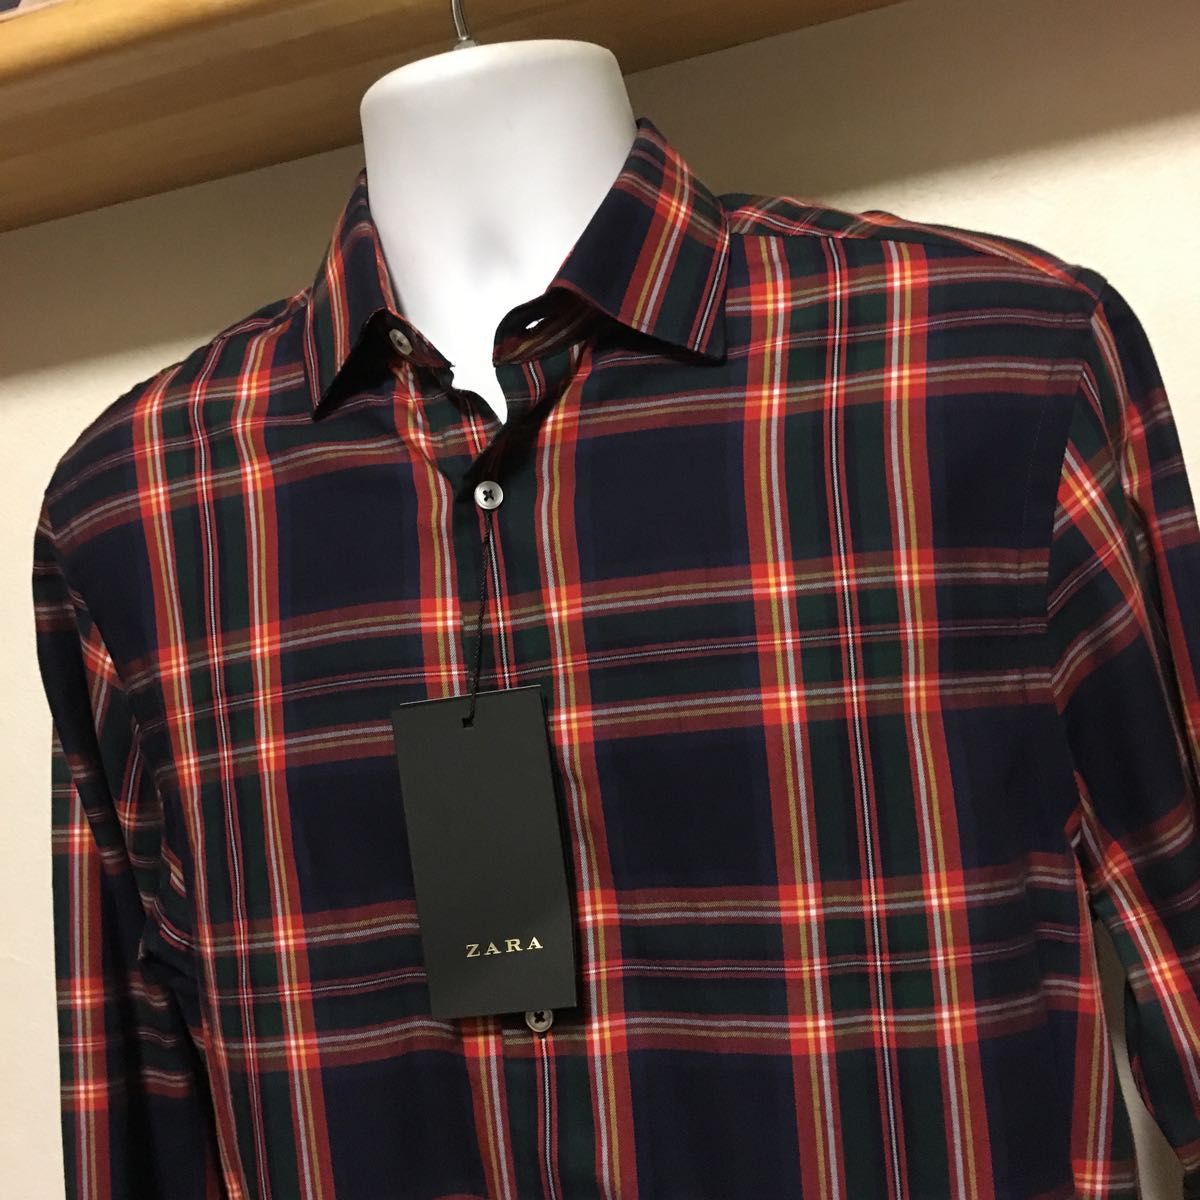 新品 完売 ZARA MAN チェック柄 シャツ メンズ L 42 チェック ネイビー オレンジ ネルシャツ